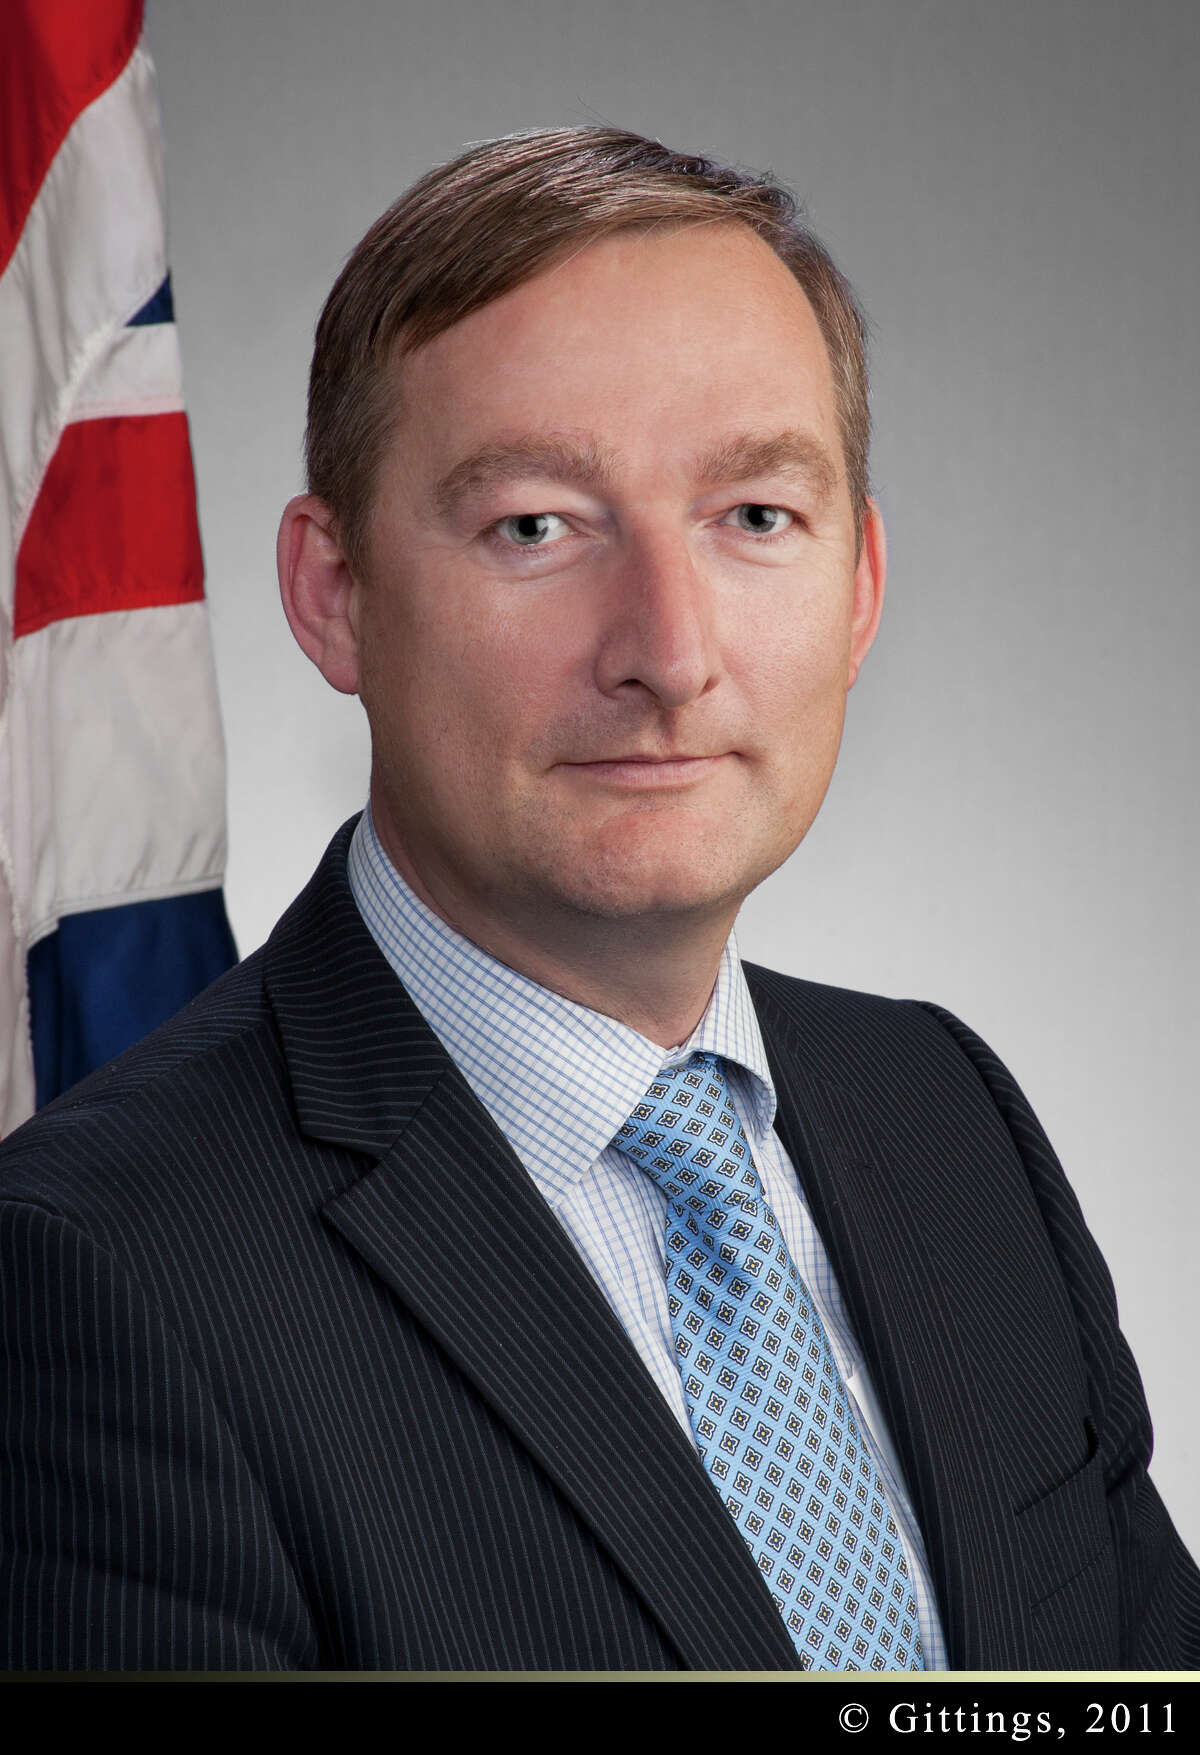 Andrew Millar is British consul general in Houston